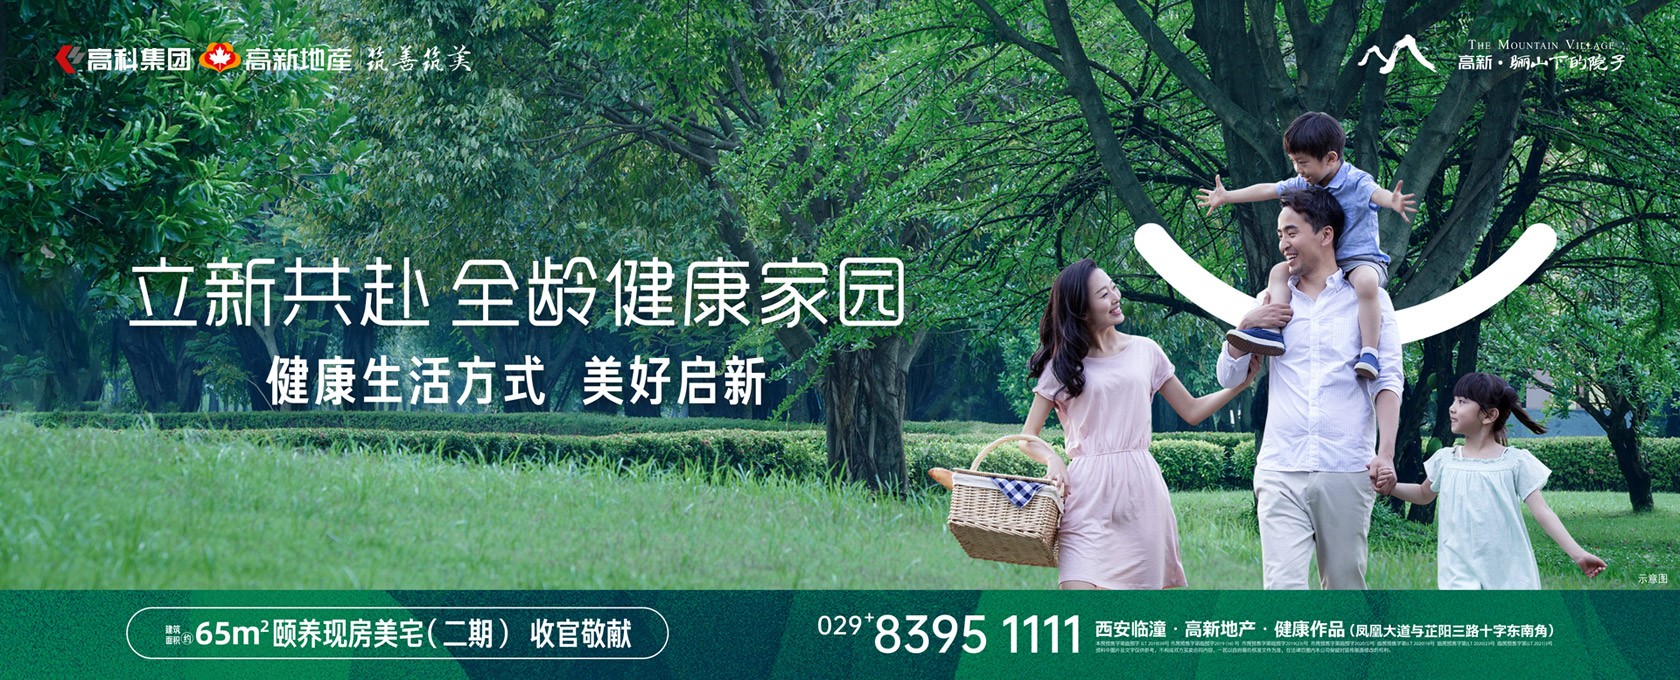 操东北女人网站立新共赴 全龄健康家园